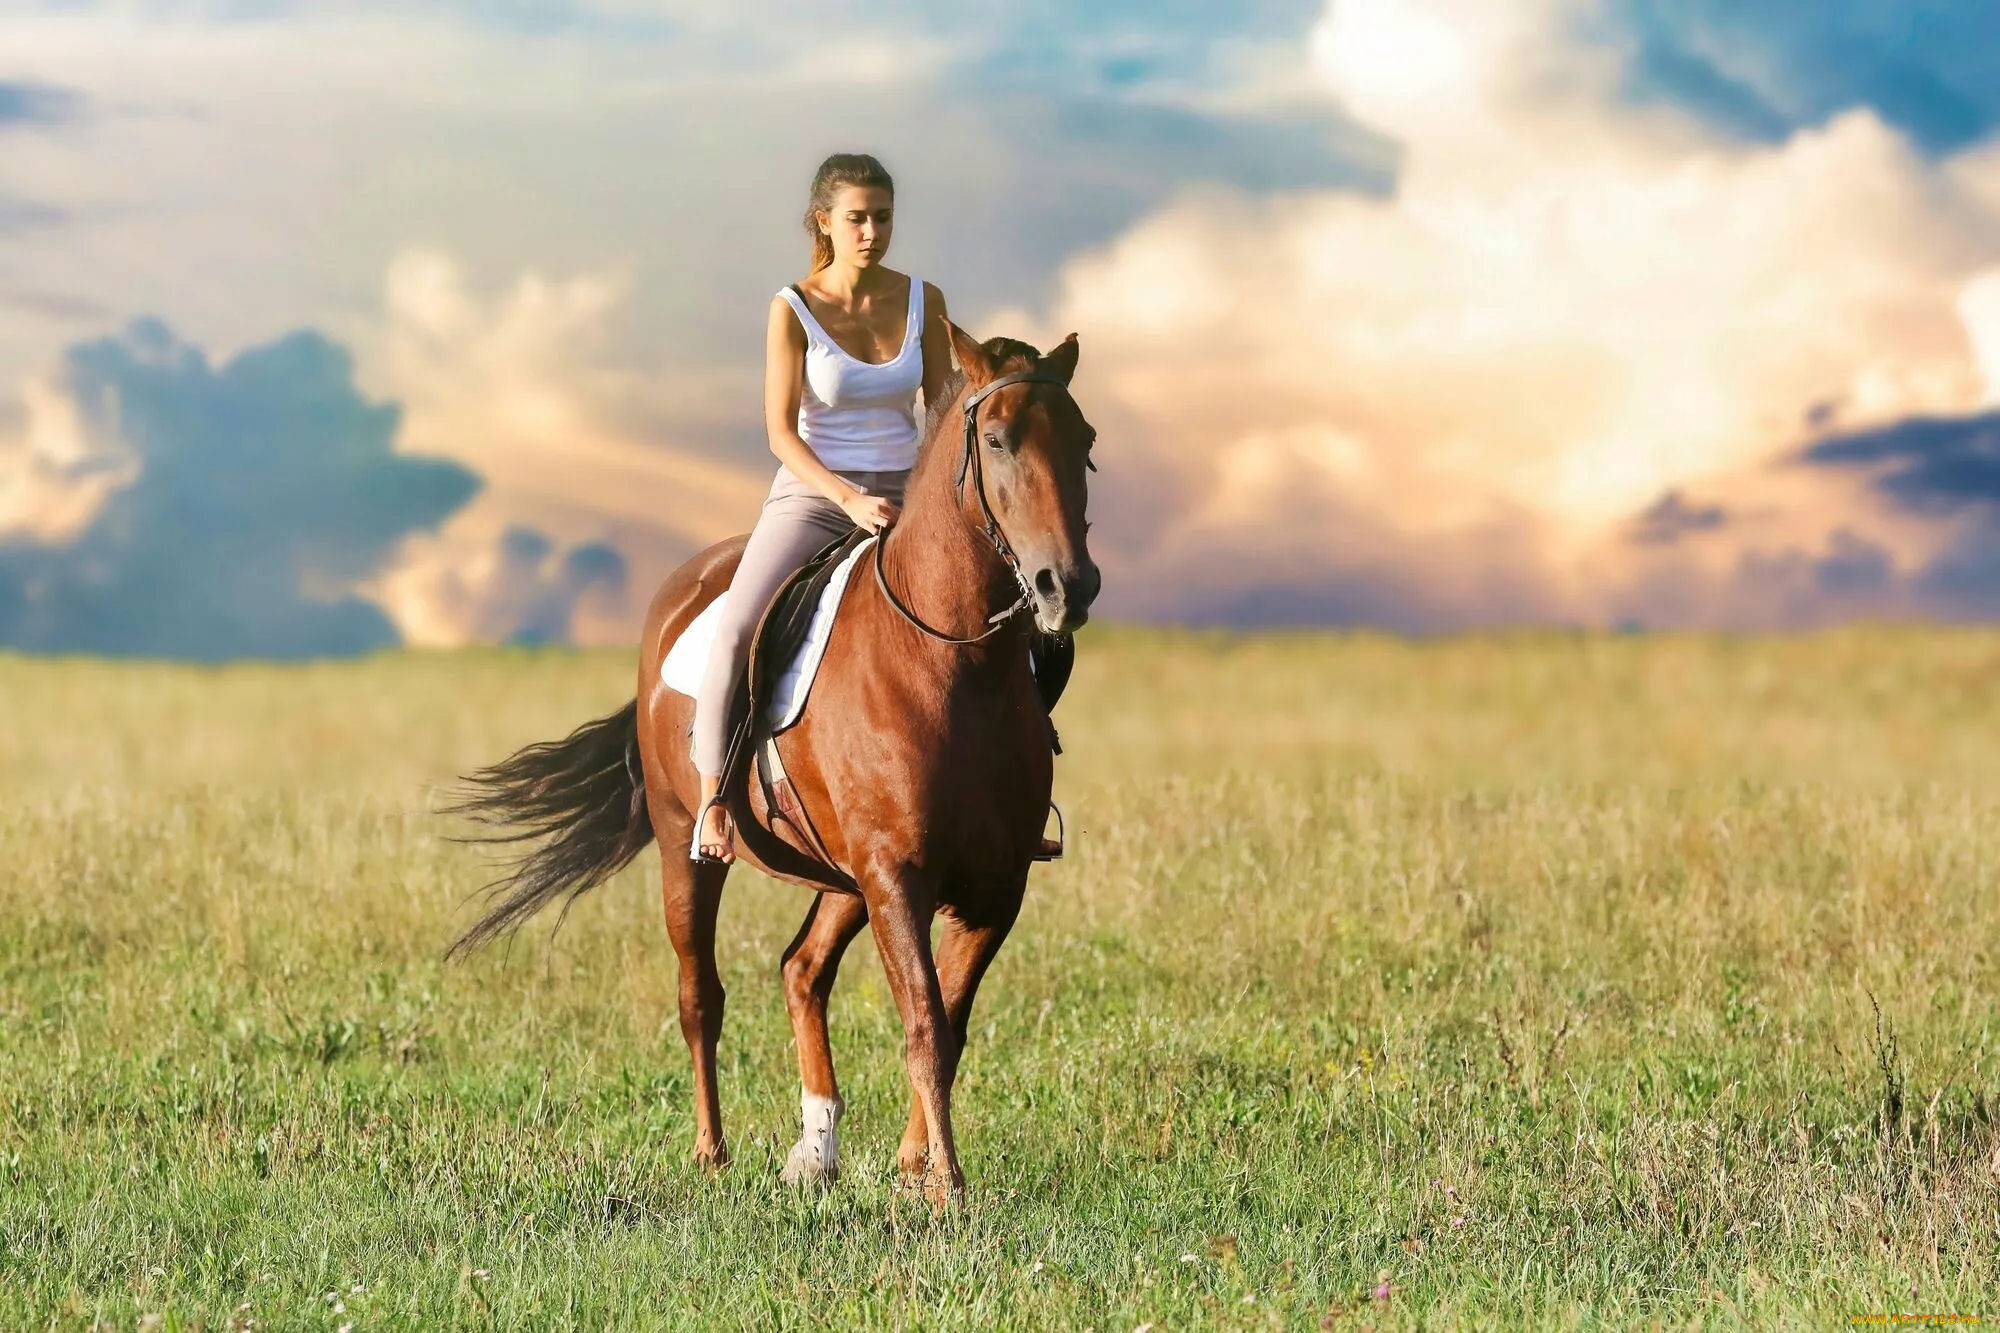 Девушки катаются на лошадях